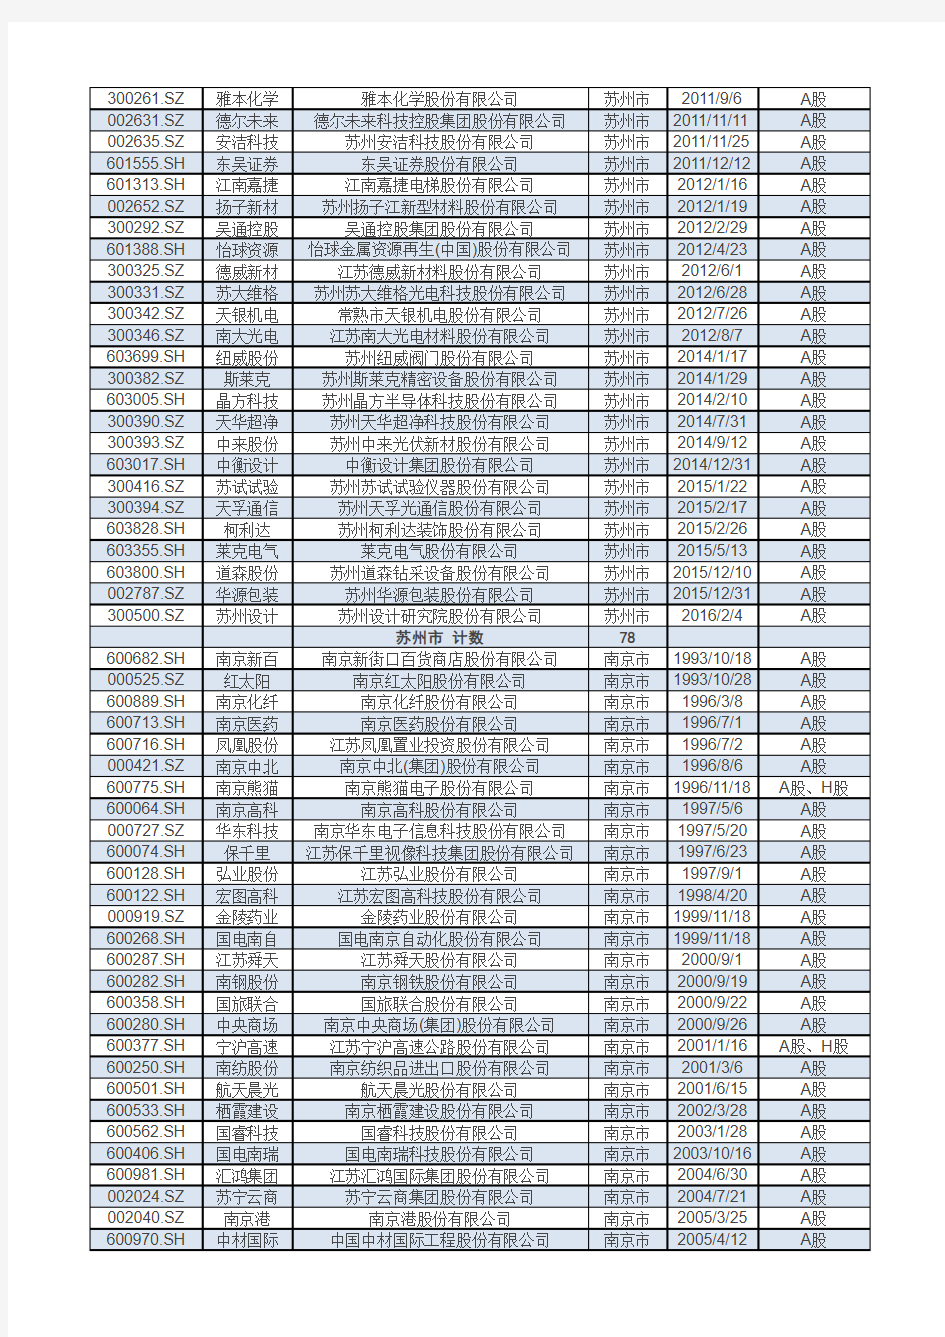 江苏A股上市公司名录(截至2016年10月)